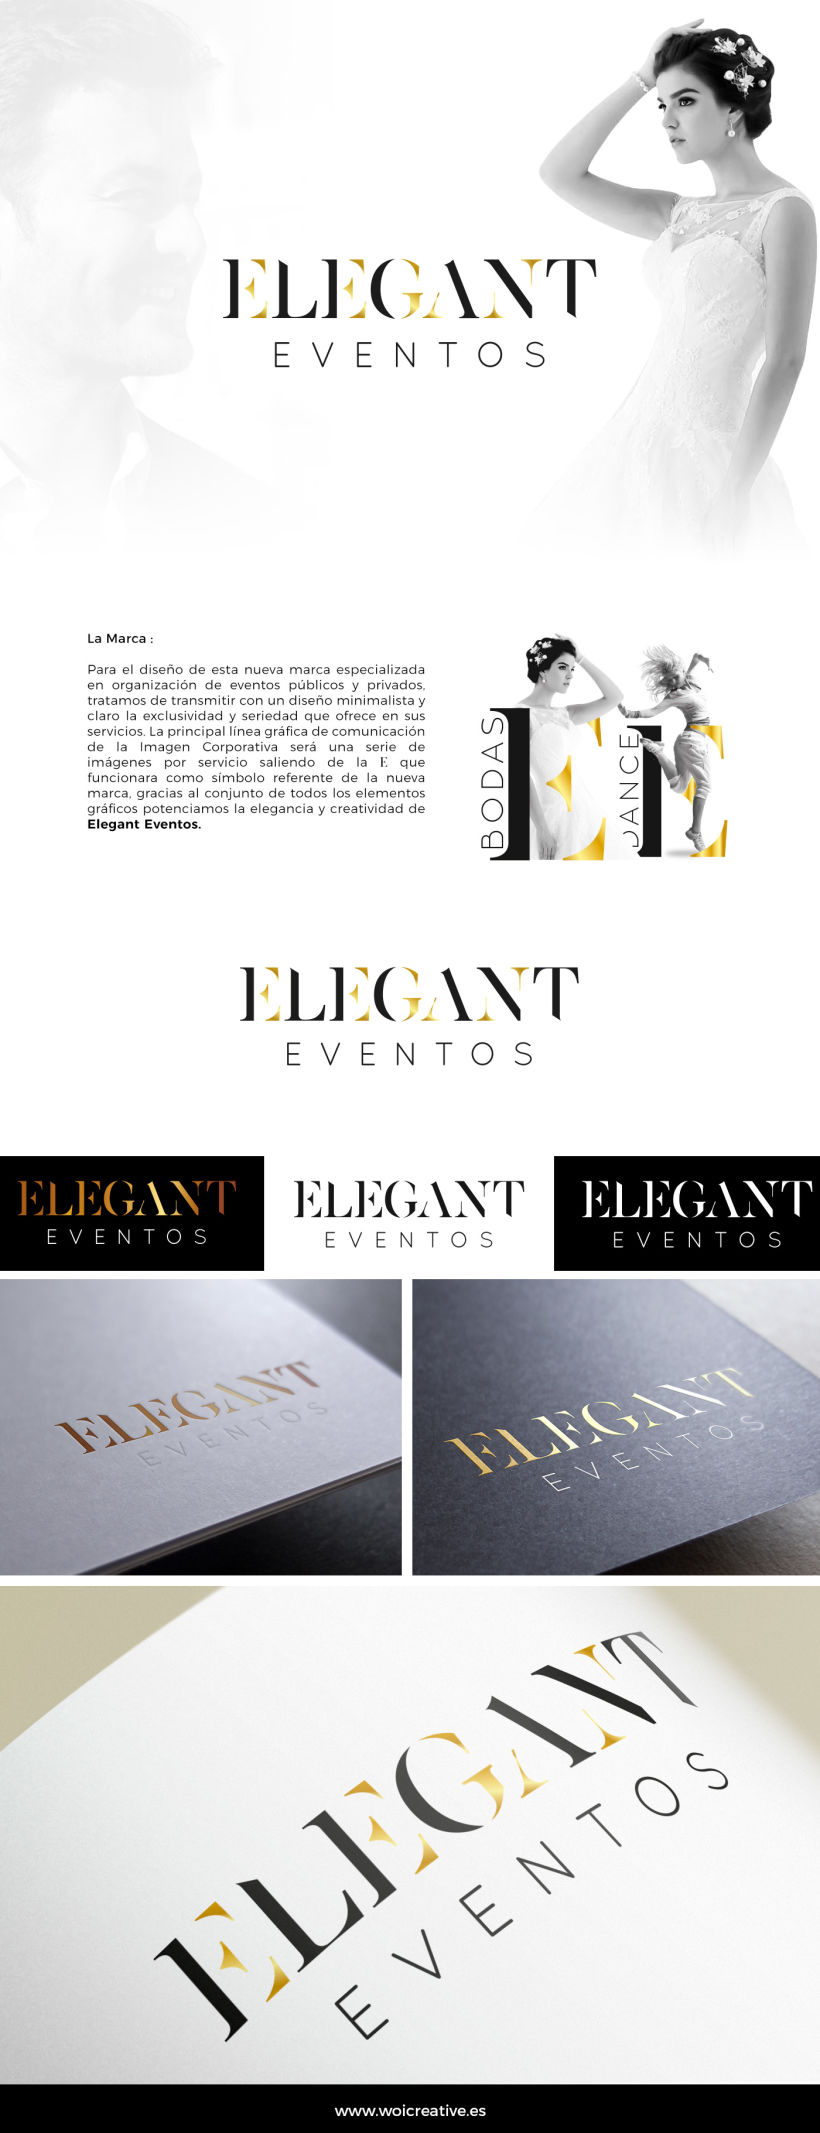 Diseño de la Imagen Corporativa - Elegant Eventos -1